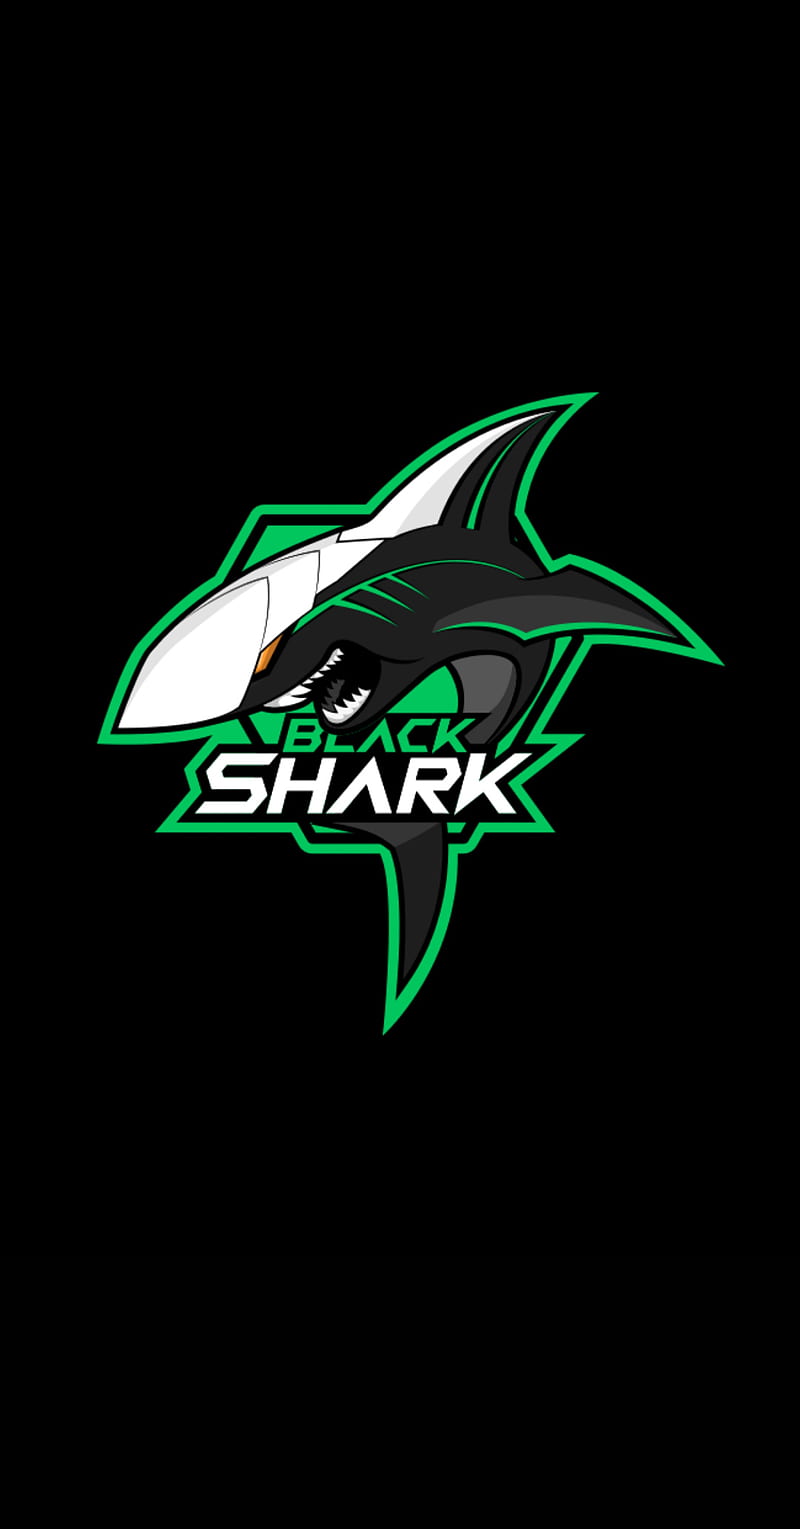 Blackshark Logo: Nhìn vào biểu tượng Blackshark, bạn sẽ ngay lập tức nhận ra nó là một thương hiệu mạnh mẽ và đầy sáng tạo. Với biểu tượng đặc trưng mang lại sự khích lệ và quyết tâm, bạn sẽ chắc chắn tìm thấy cảm hứng từ hình ảnh này.